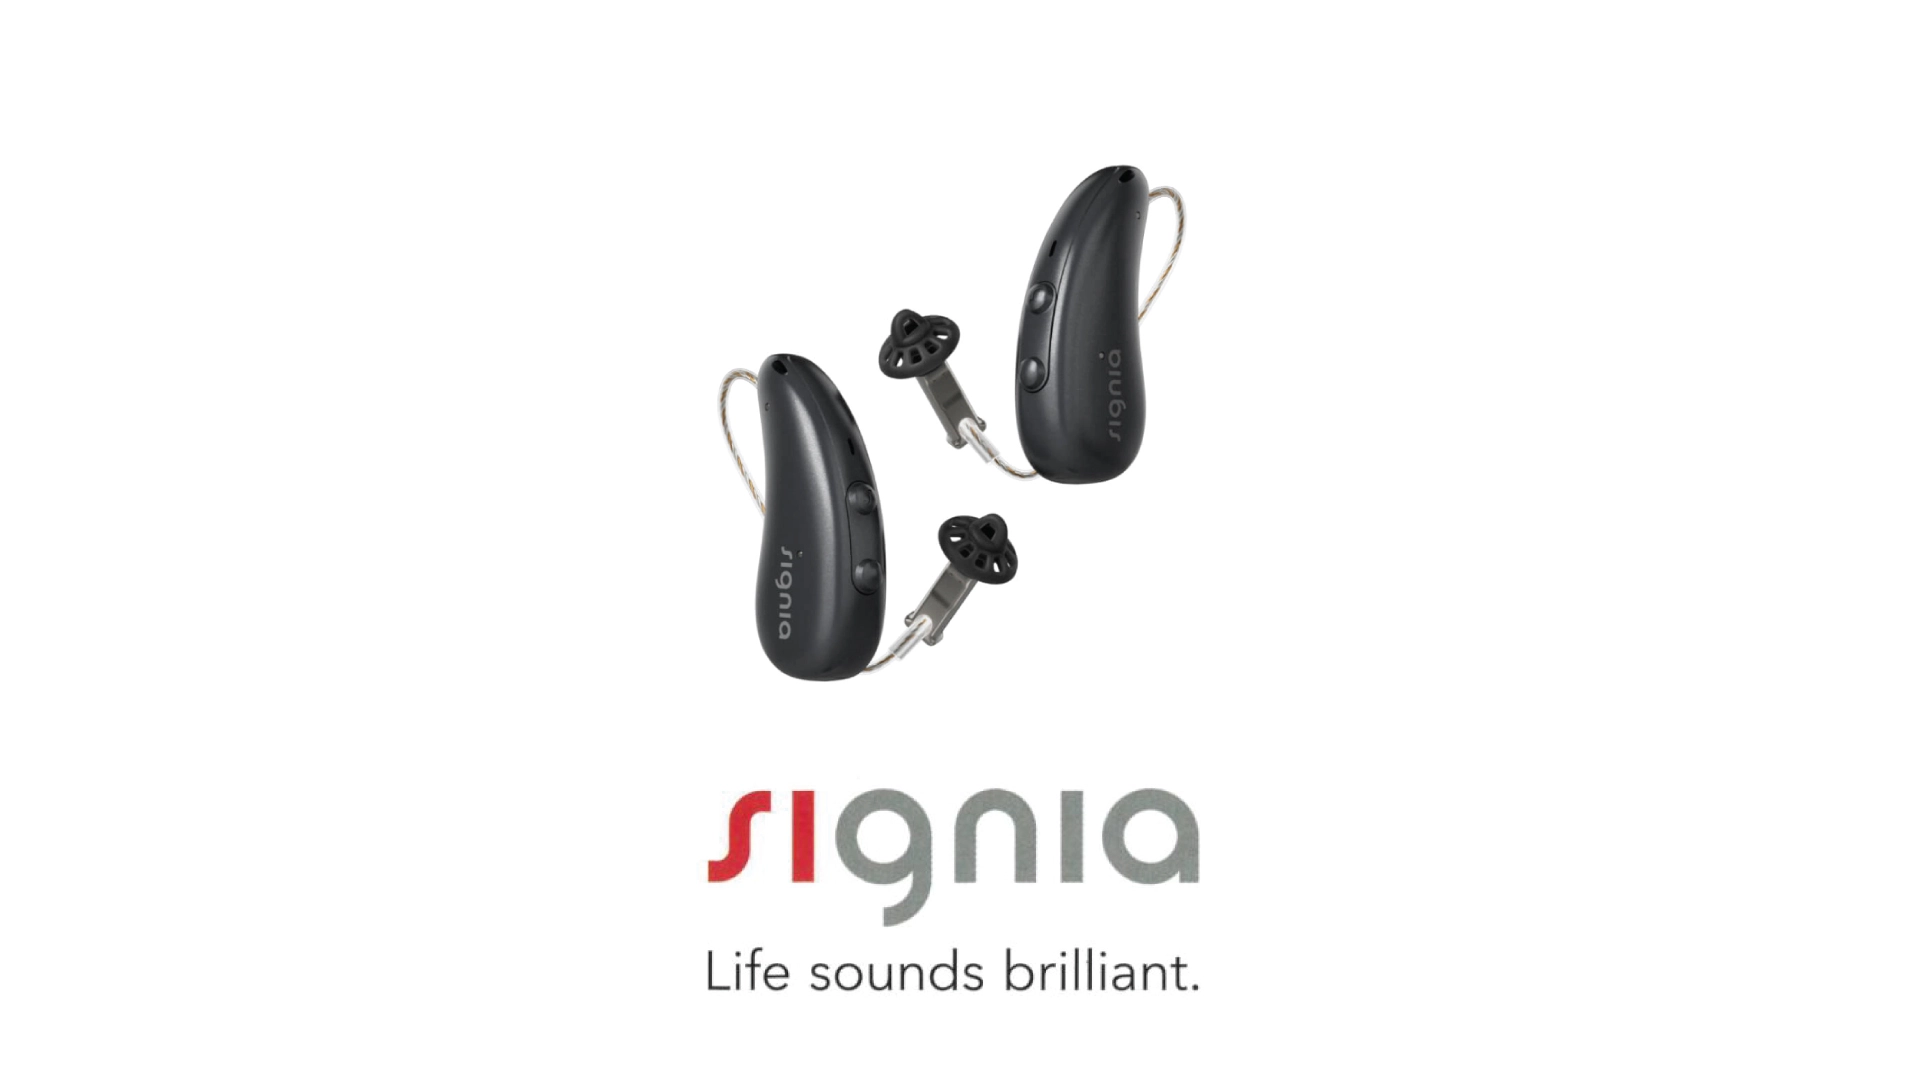 耳かけ型補聴器 シグニア ピュアc&g ix 【signia pure c&g ix】